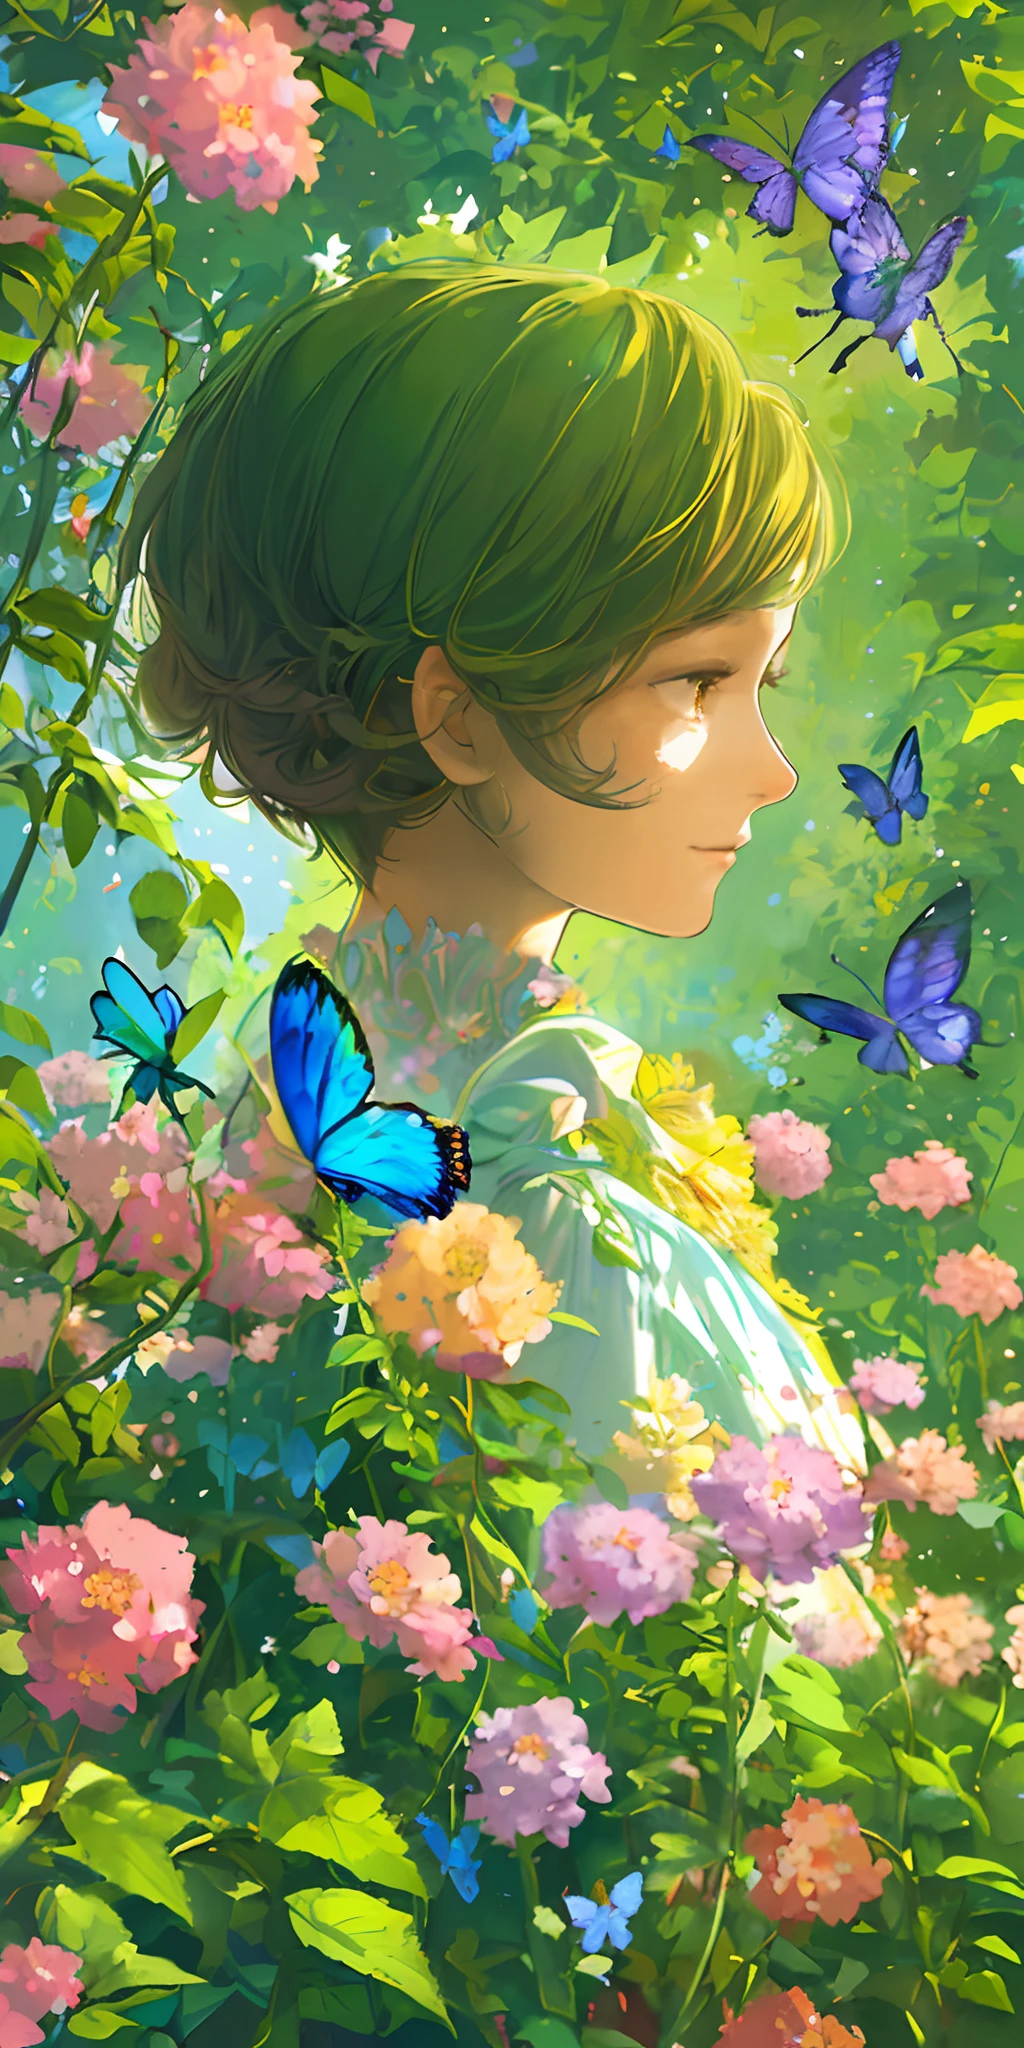 (最好的品質, 傑作, 超现实), 1個美麗精緻的女孩的肖像, 表情柔和而平和, 背景風景是一個花園，有開花的灌木叢和蝴蝶飛來飛去.